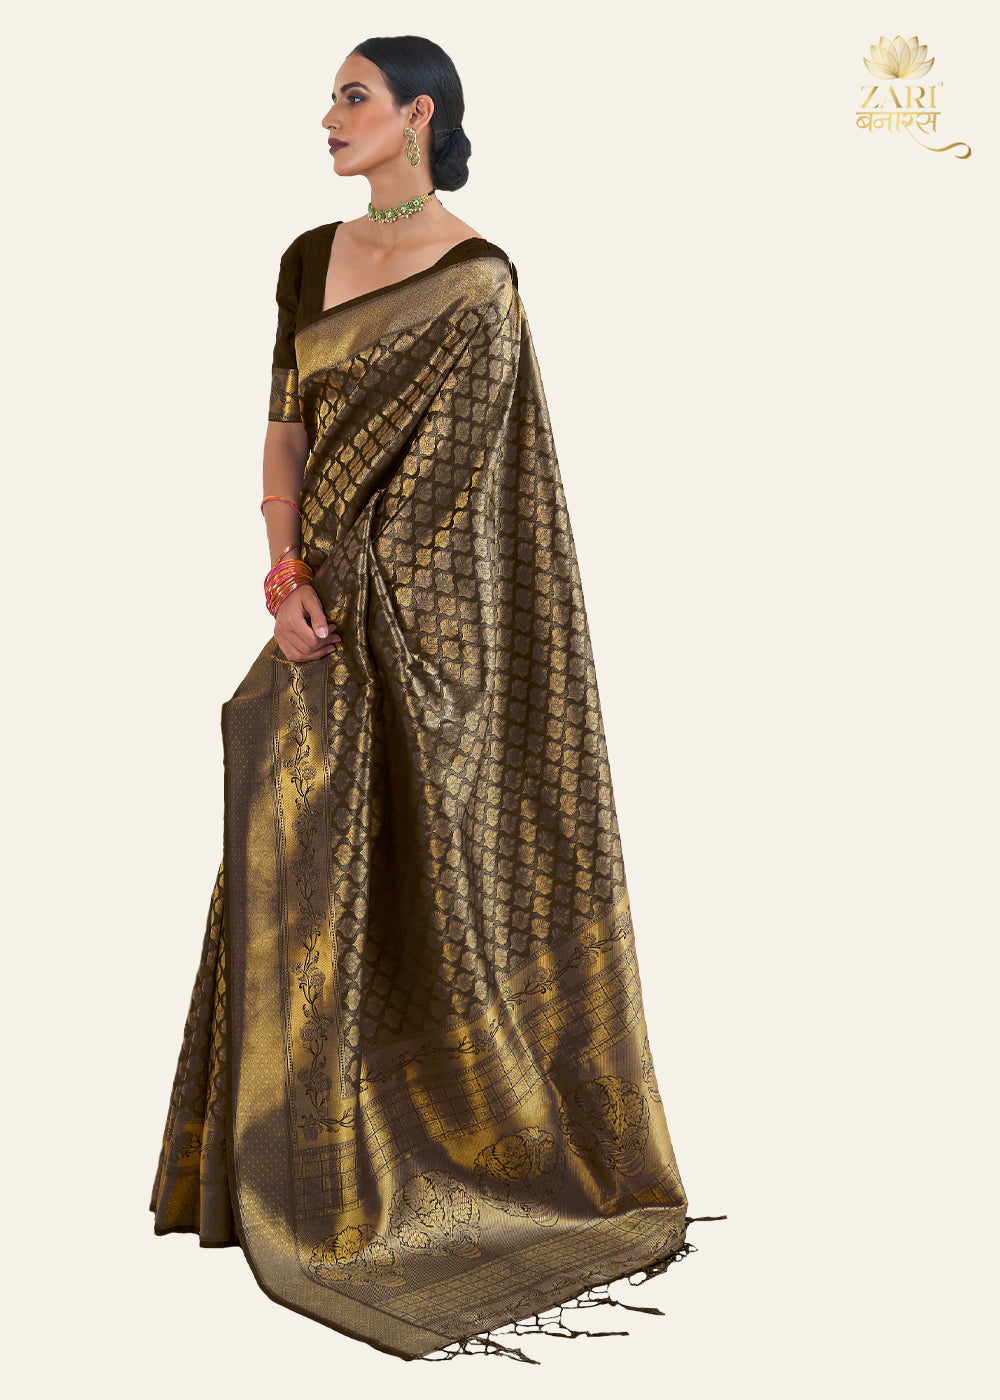 Royal Golden Brown Woven Kanjivaram Silk Saree – Zari Banaras